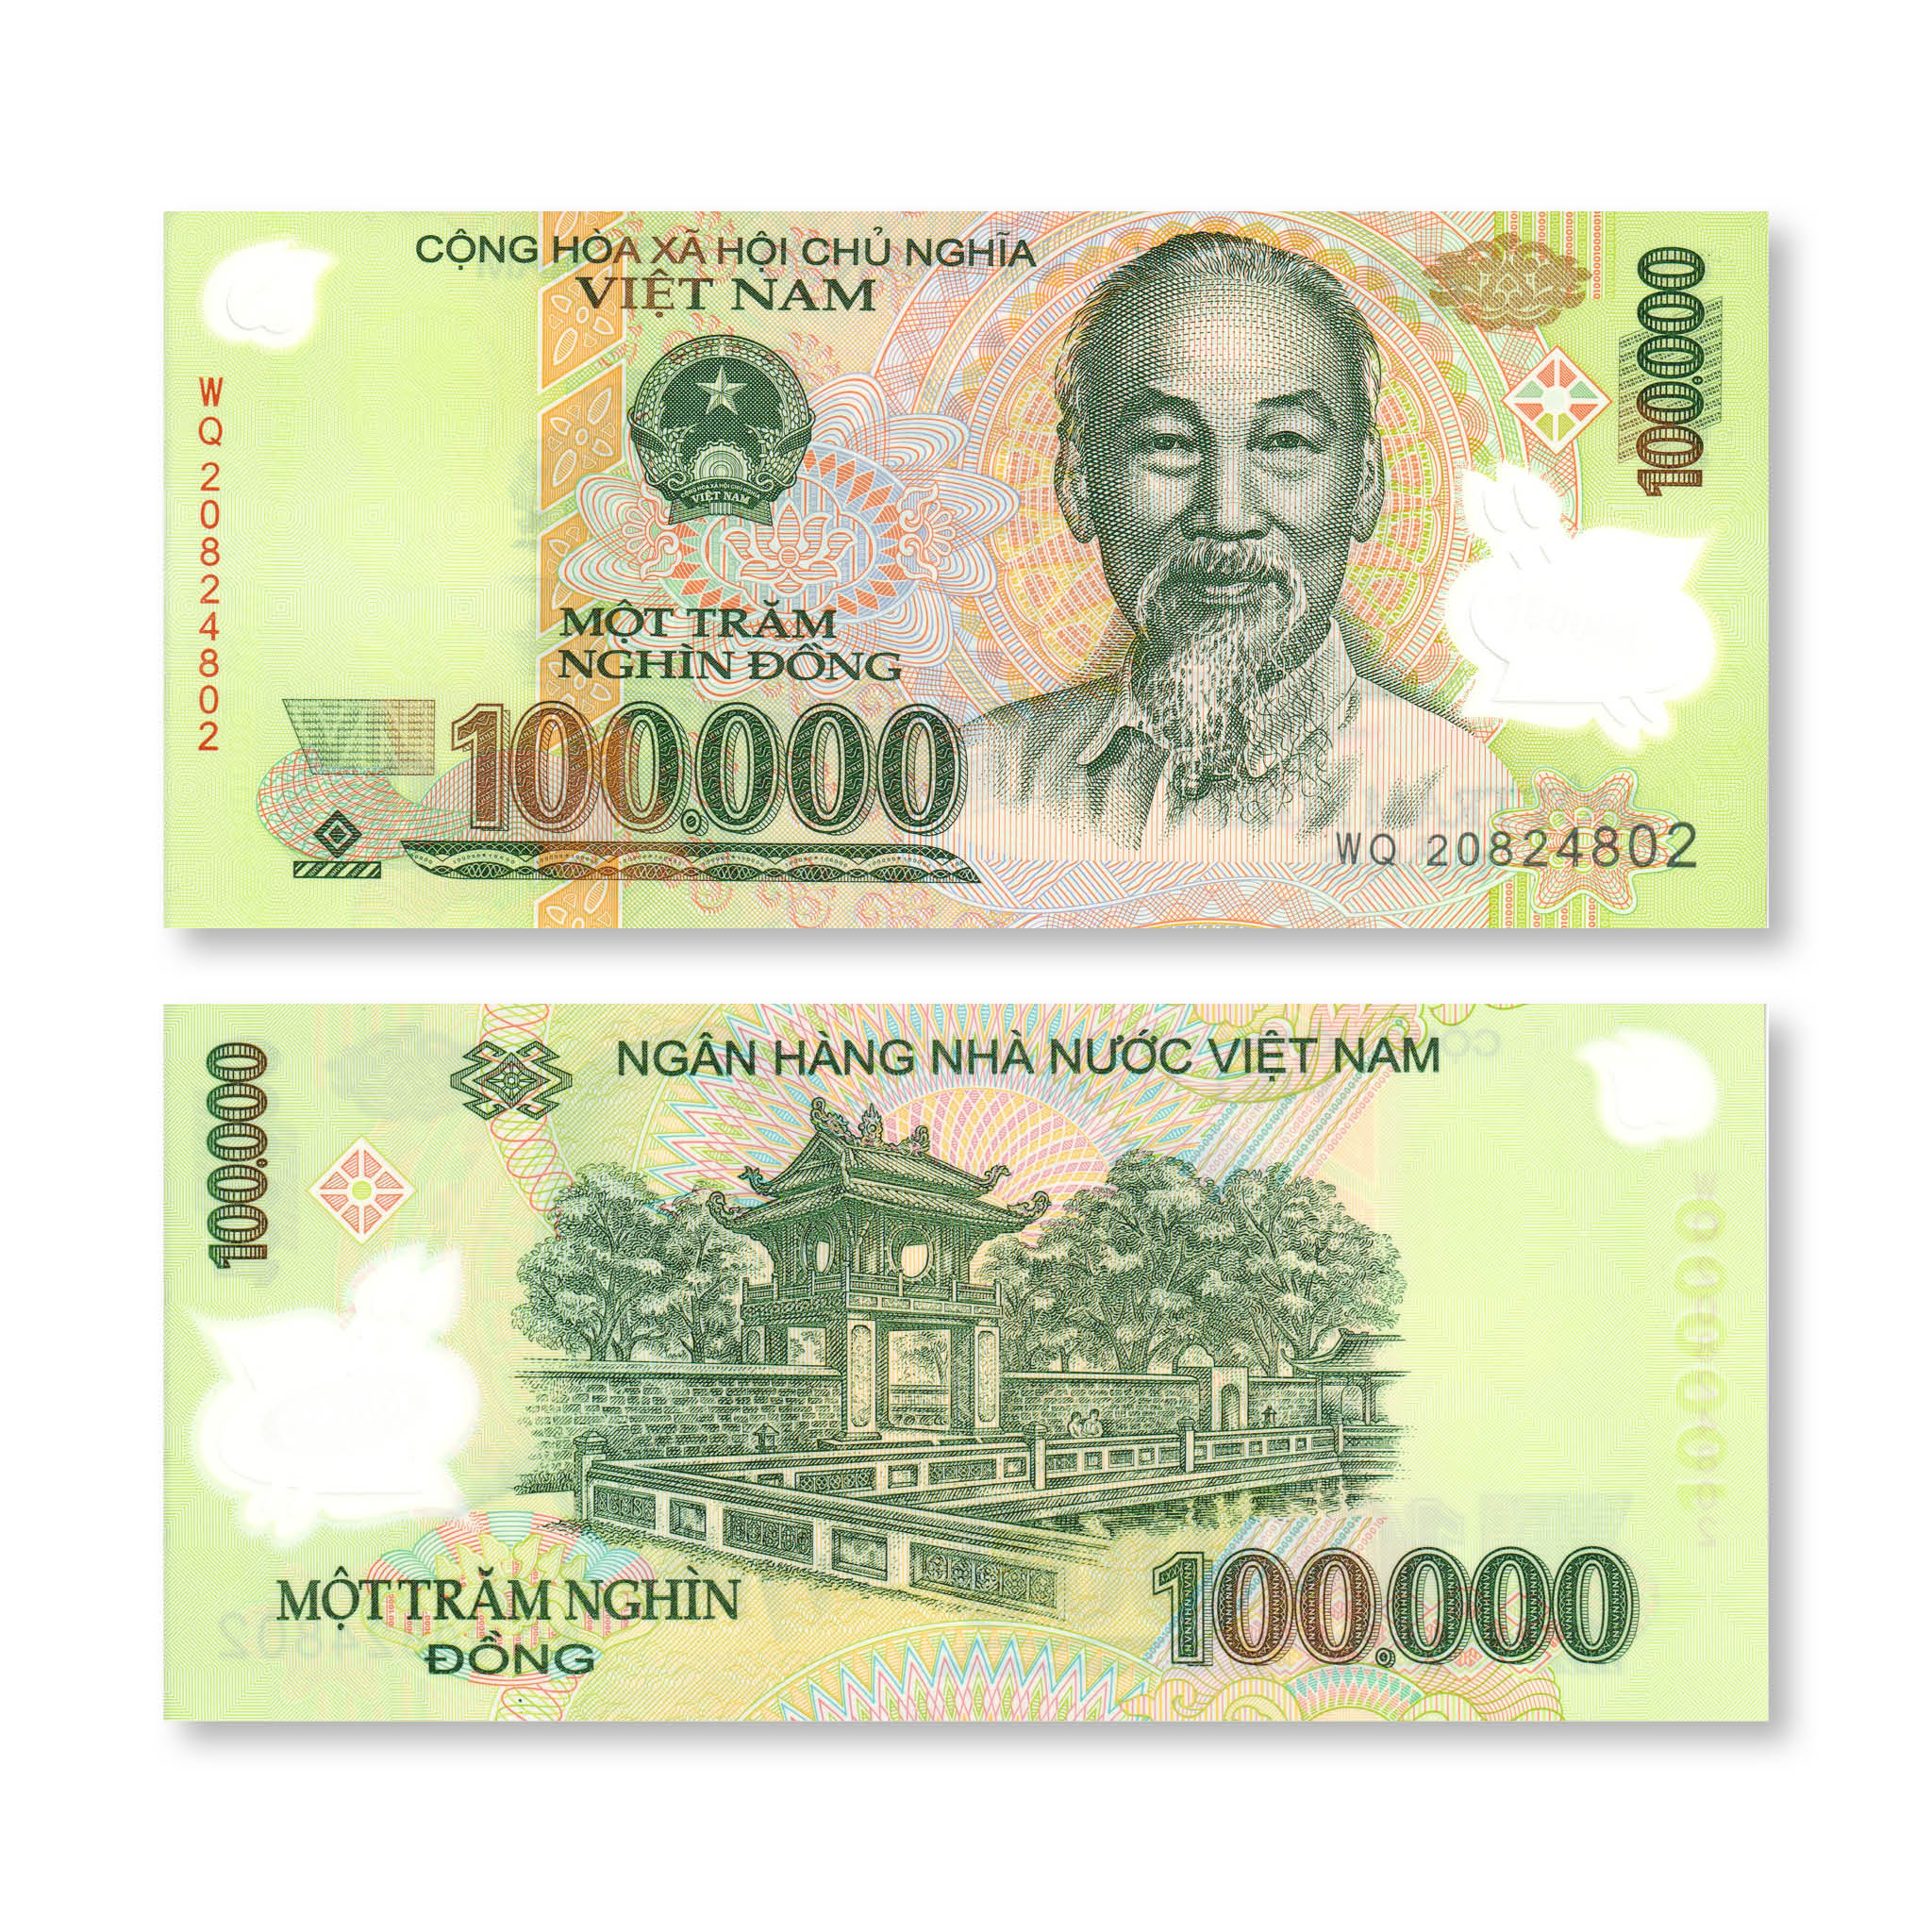 Vietnam 100000 Dong, 2020, B346n, P122, UNC - Robert's World Money - World Banknotes